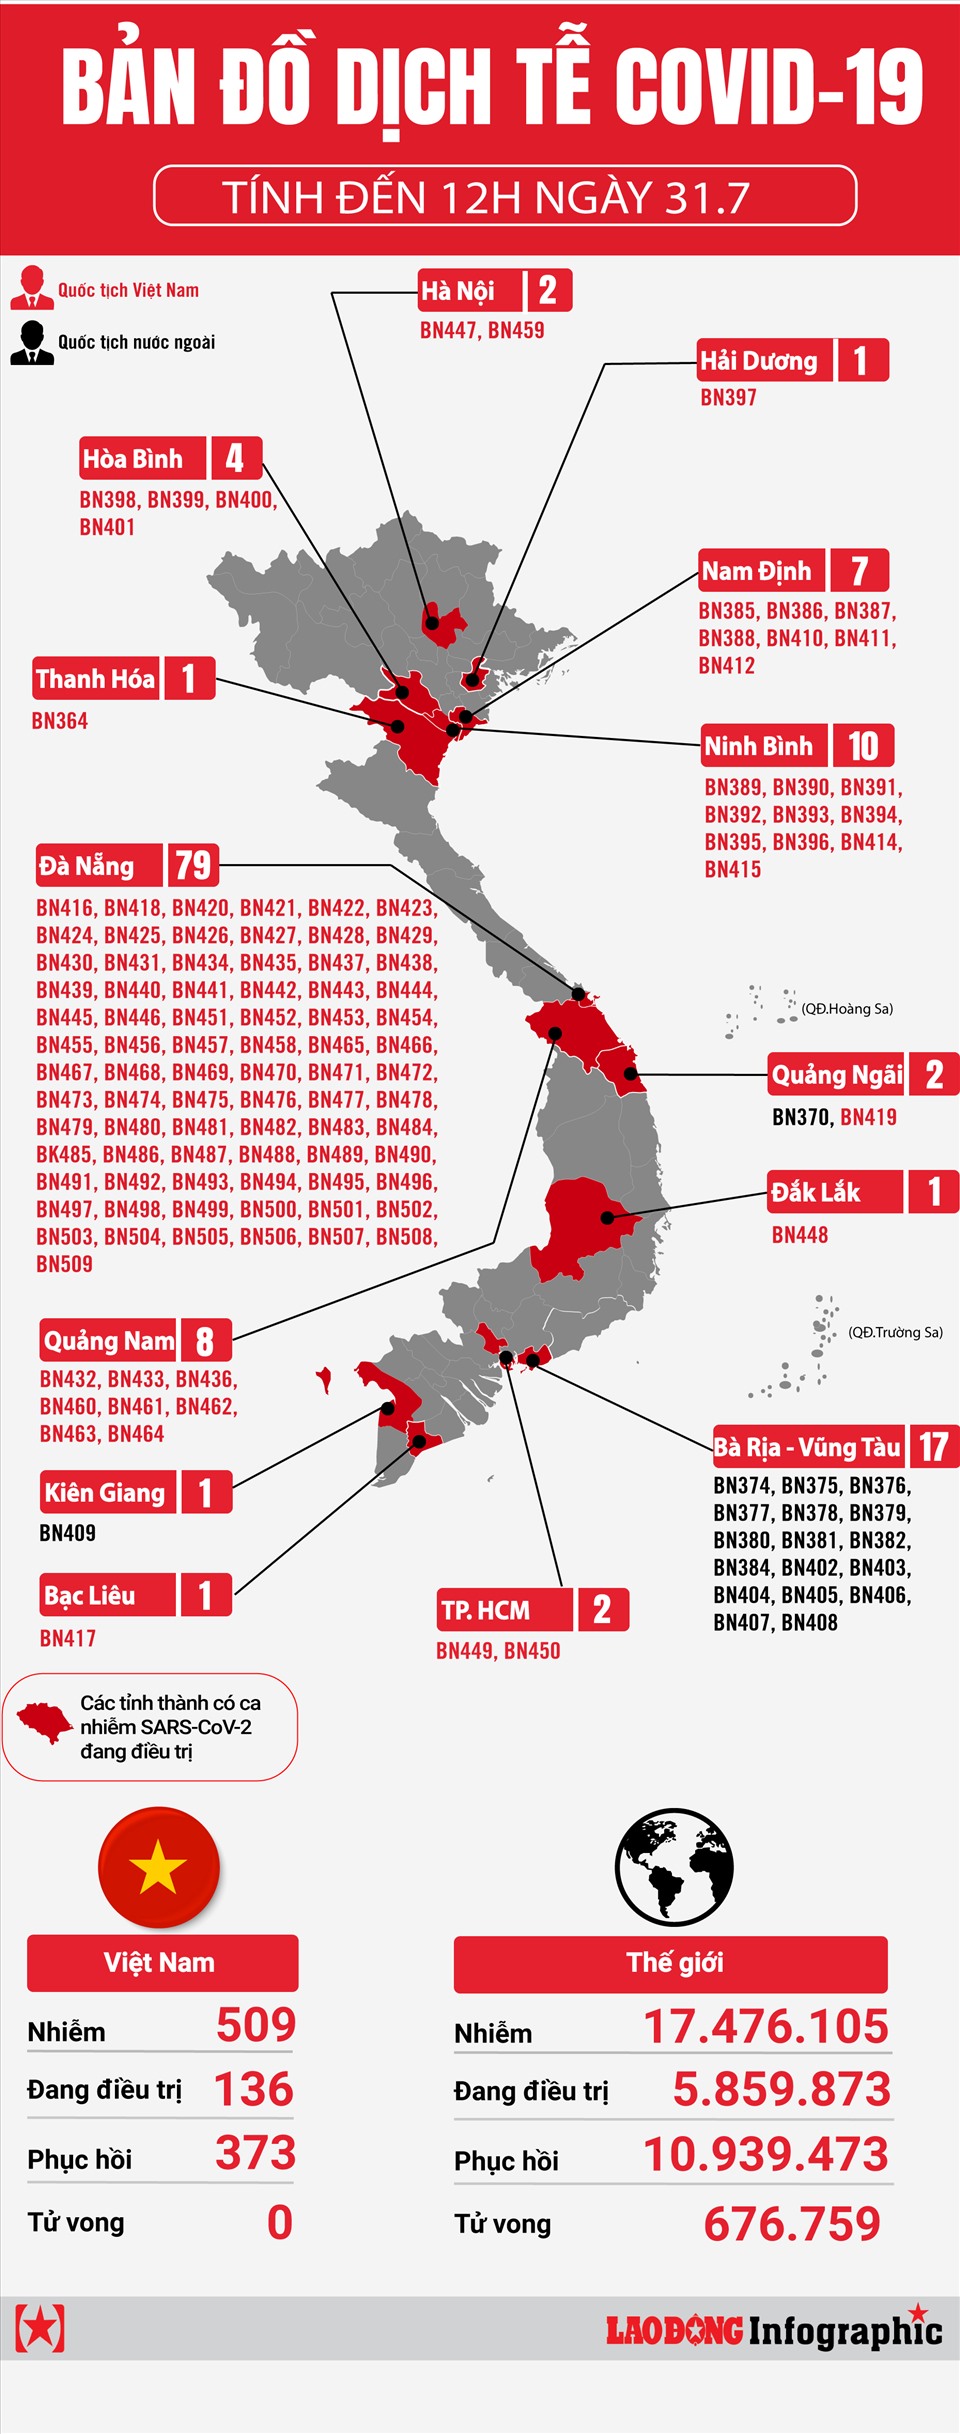 Bản đồ dịch tễ COVID-19 tại Việt Nam tính đến 12h ngày 31.7 cho thấy tình hình dịch bệnh đang được kiểm soát và giảm dần trên toàn quốc. Nhờ nỗ lực chung trong phòng chống dịch, chúng ta đang tiến tới mục tiêu đạt được Zero Covid.